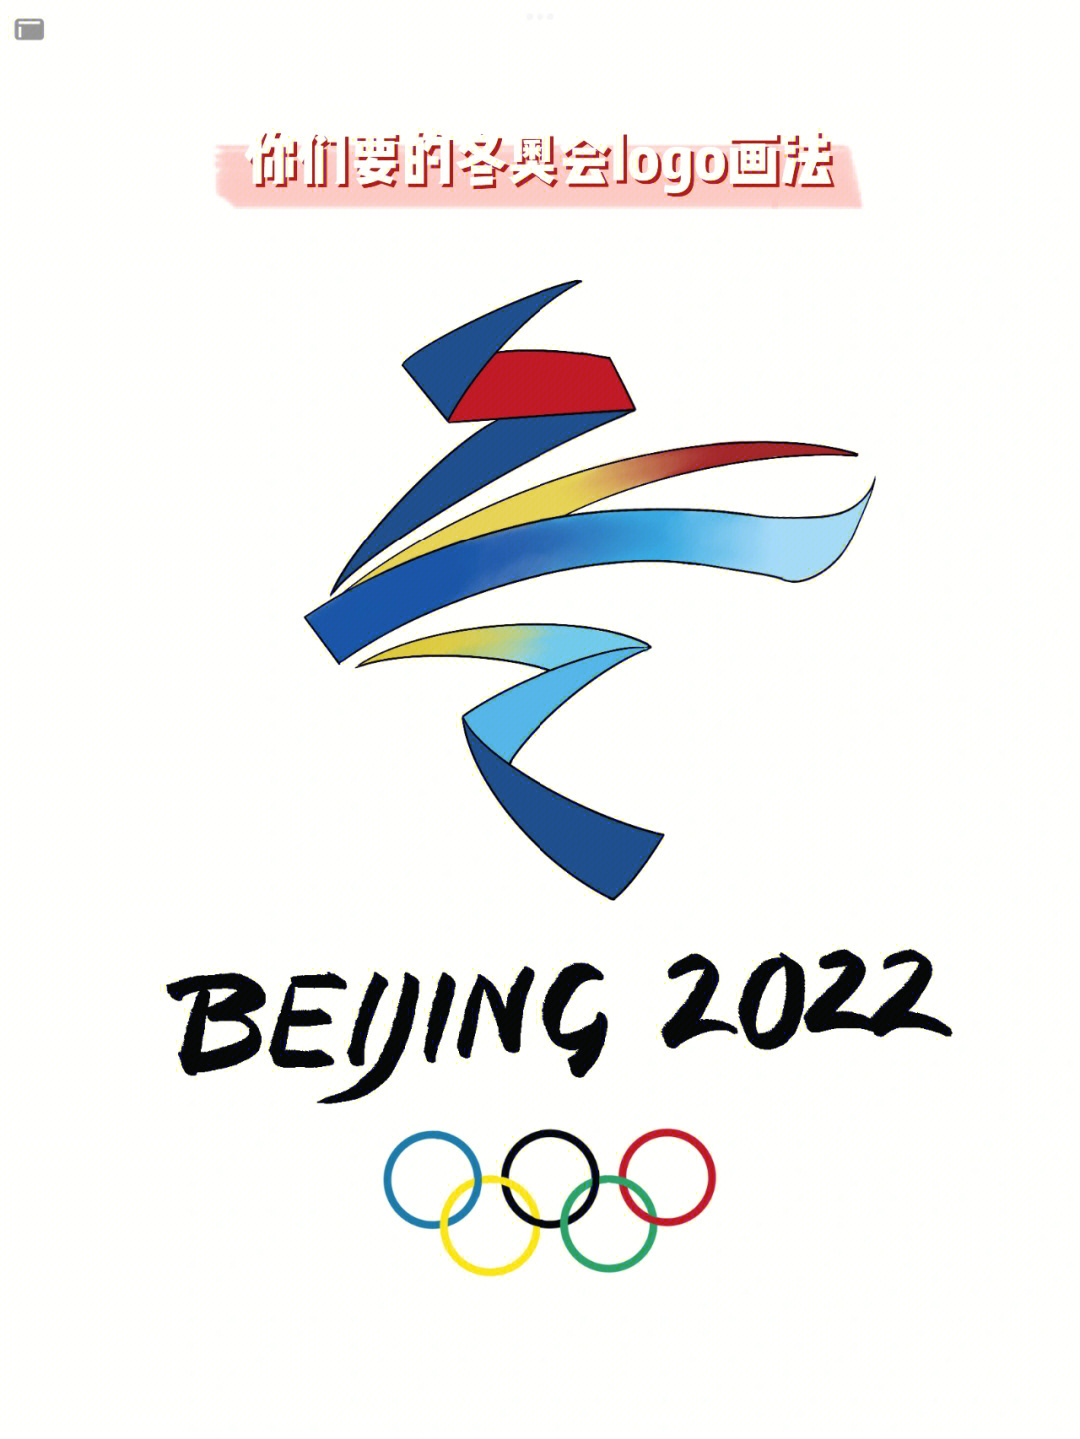 日本冬奥会logo图片